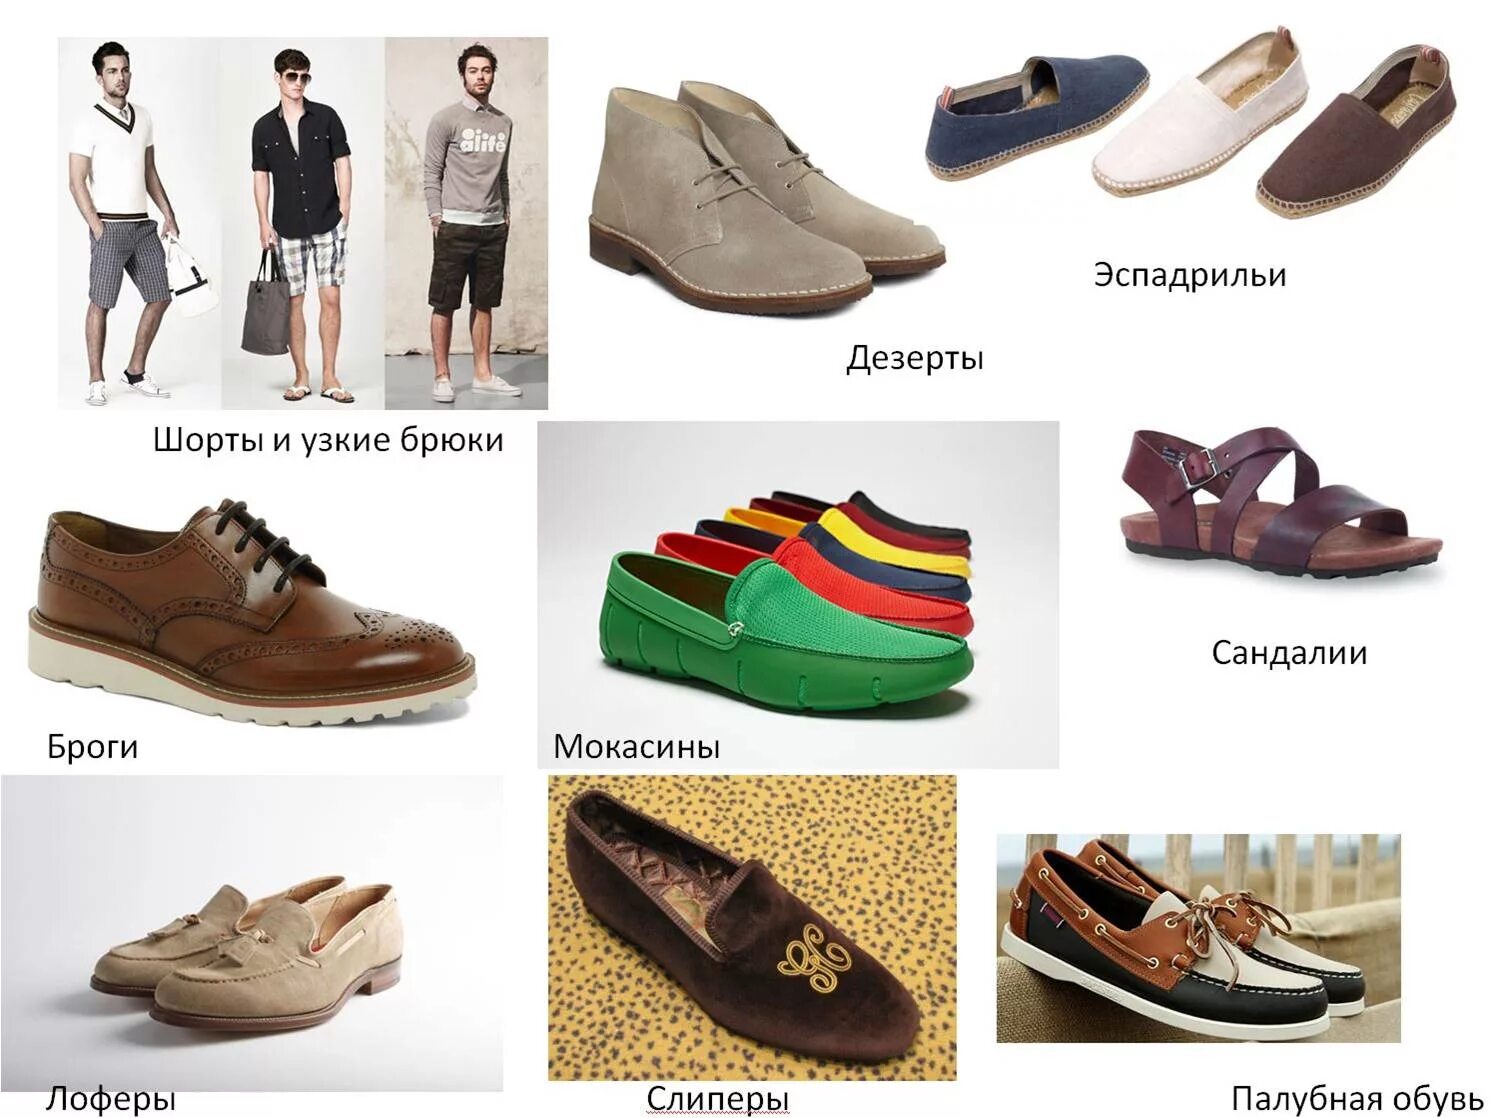 Выбор мужской обуви на весну. Обувь для ношения в доме. Какую обувь носить весной летом. Одевать обувь.